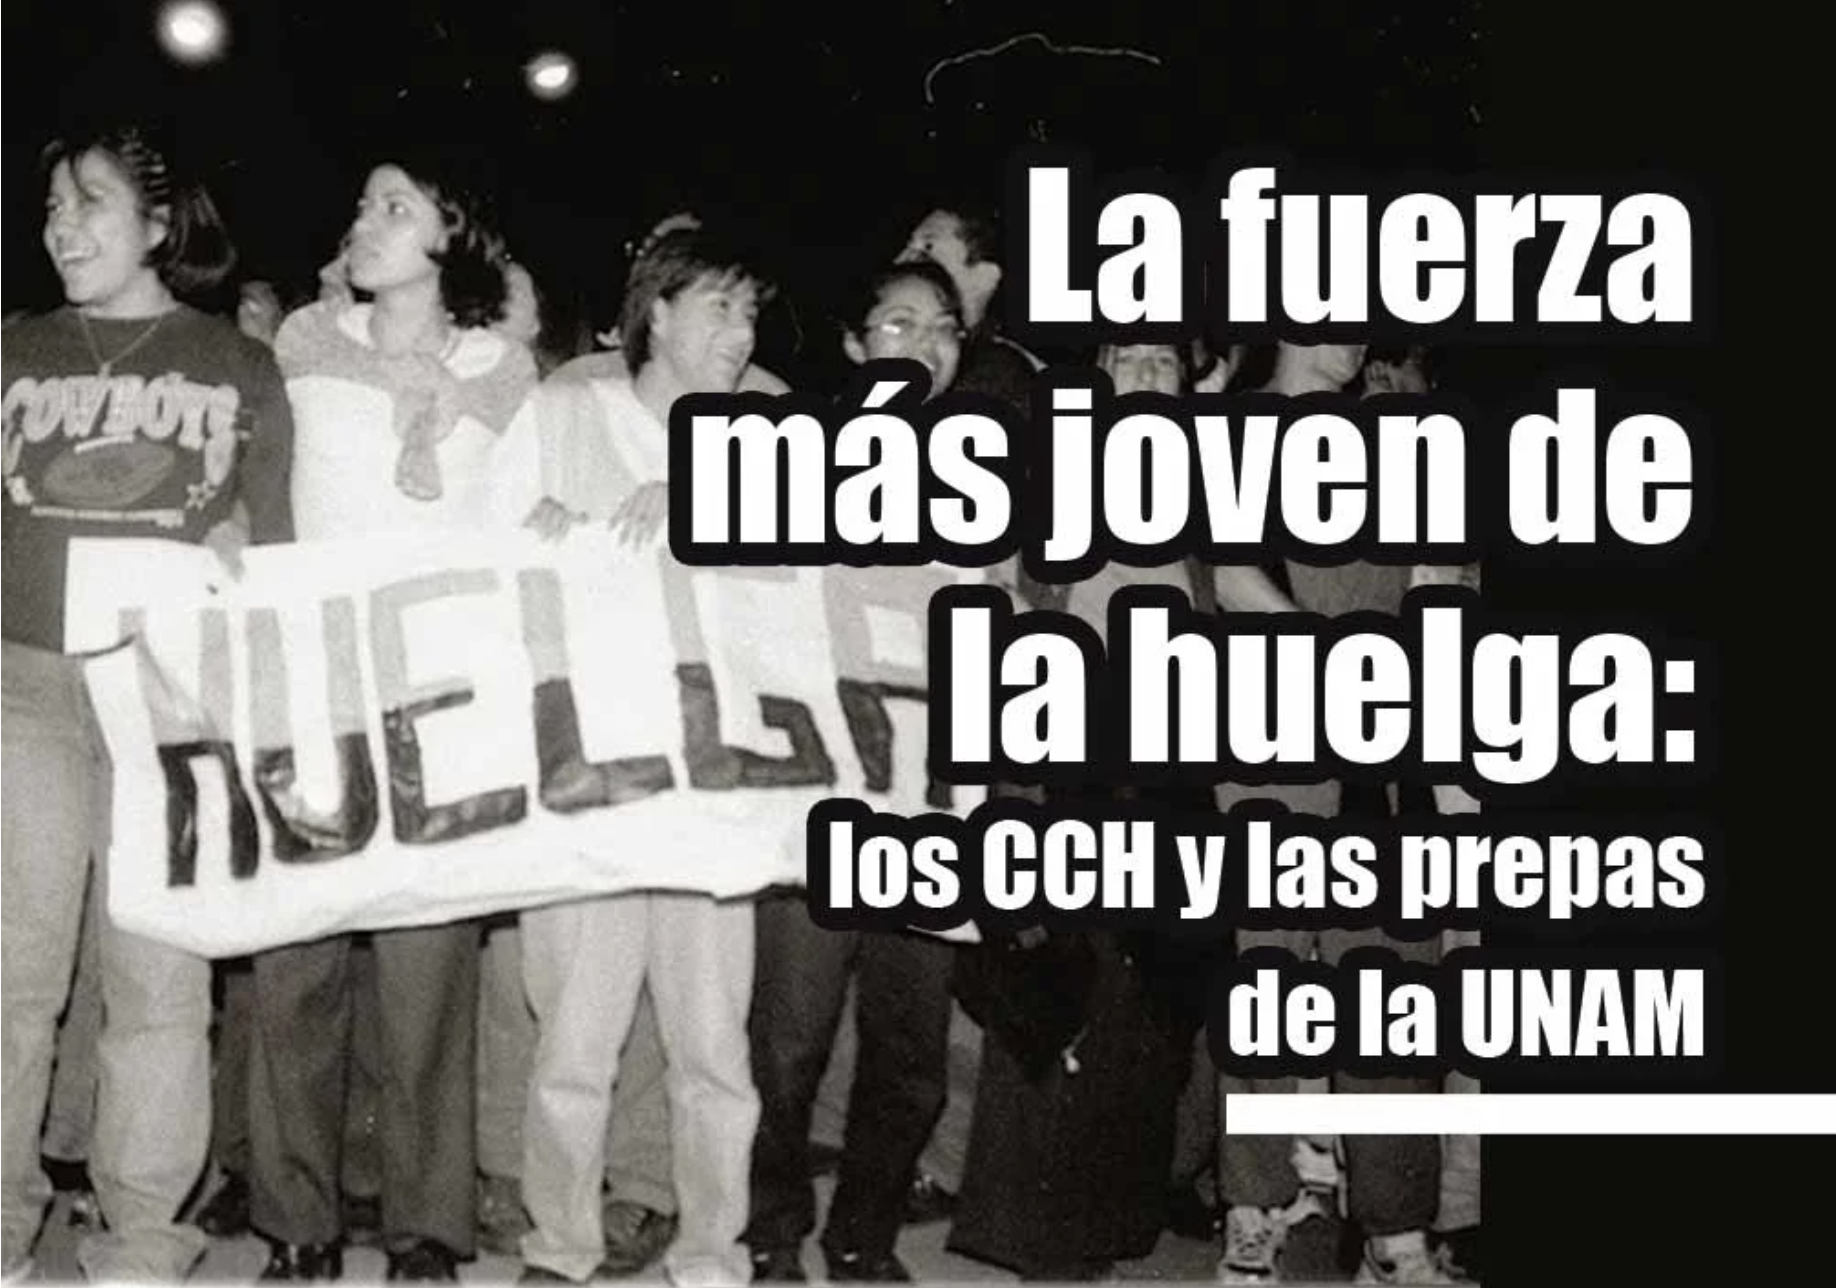 La fuerza más joven de la huelga: los CCH y las prepas de la UNAM